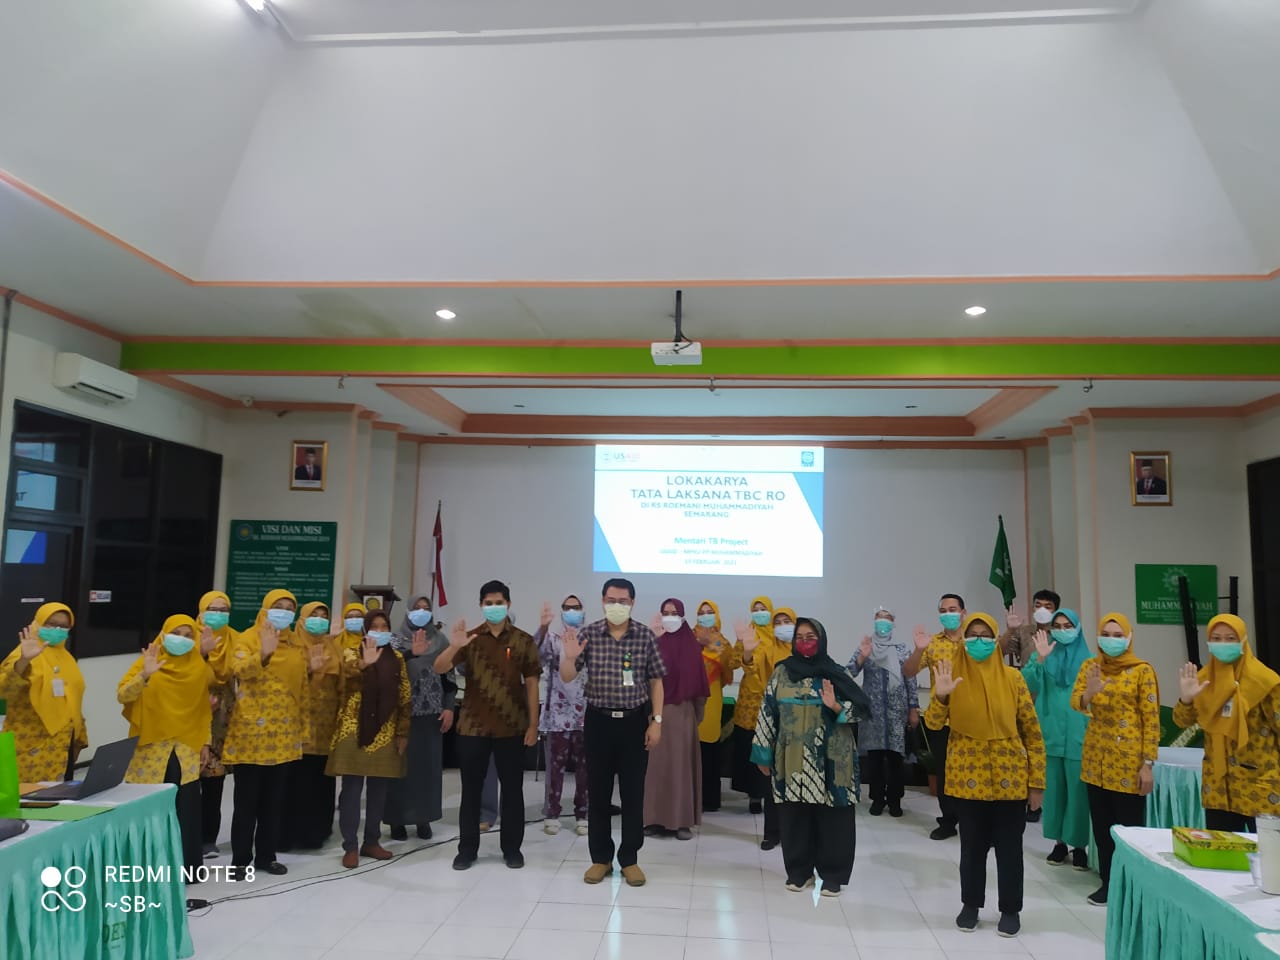 RS Roemani Muhammadiyah , Gelar acara Workshop Tatalaksana TBC RO